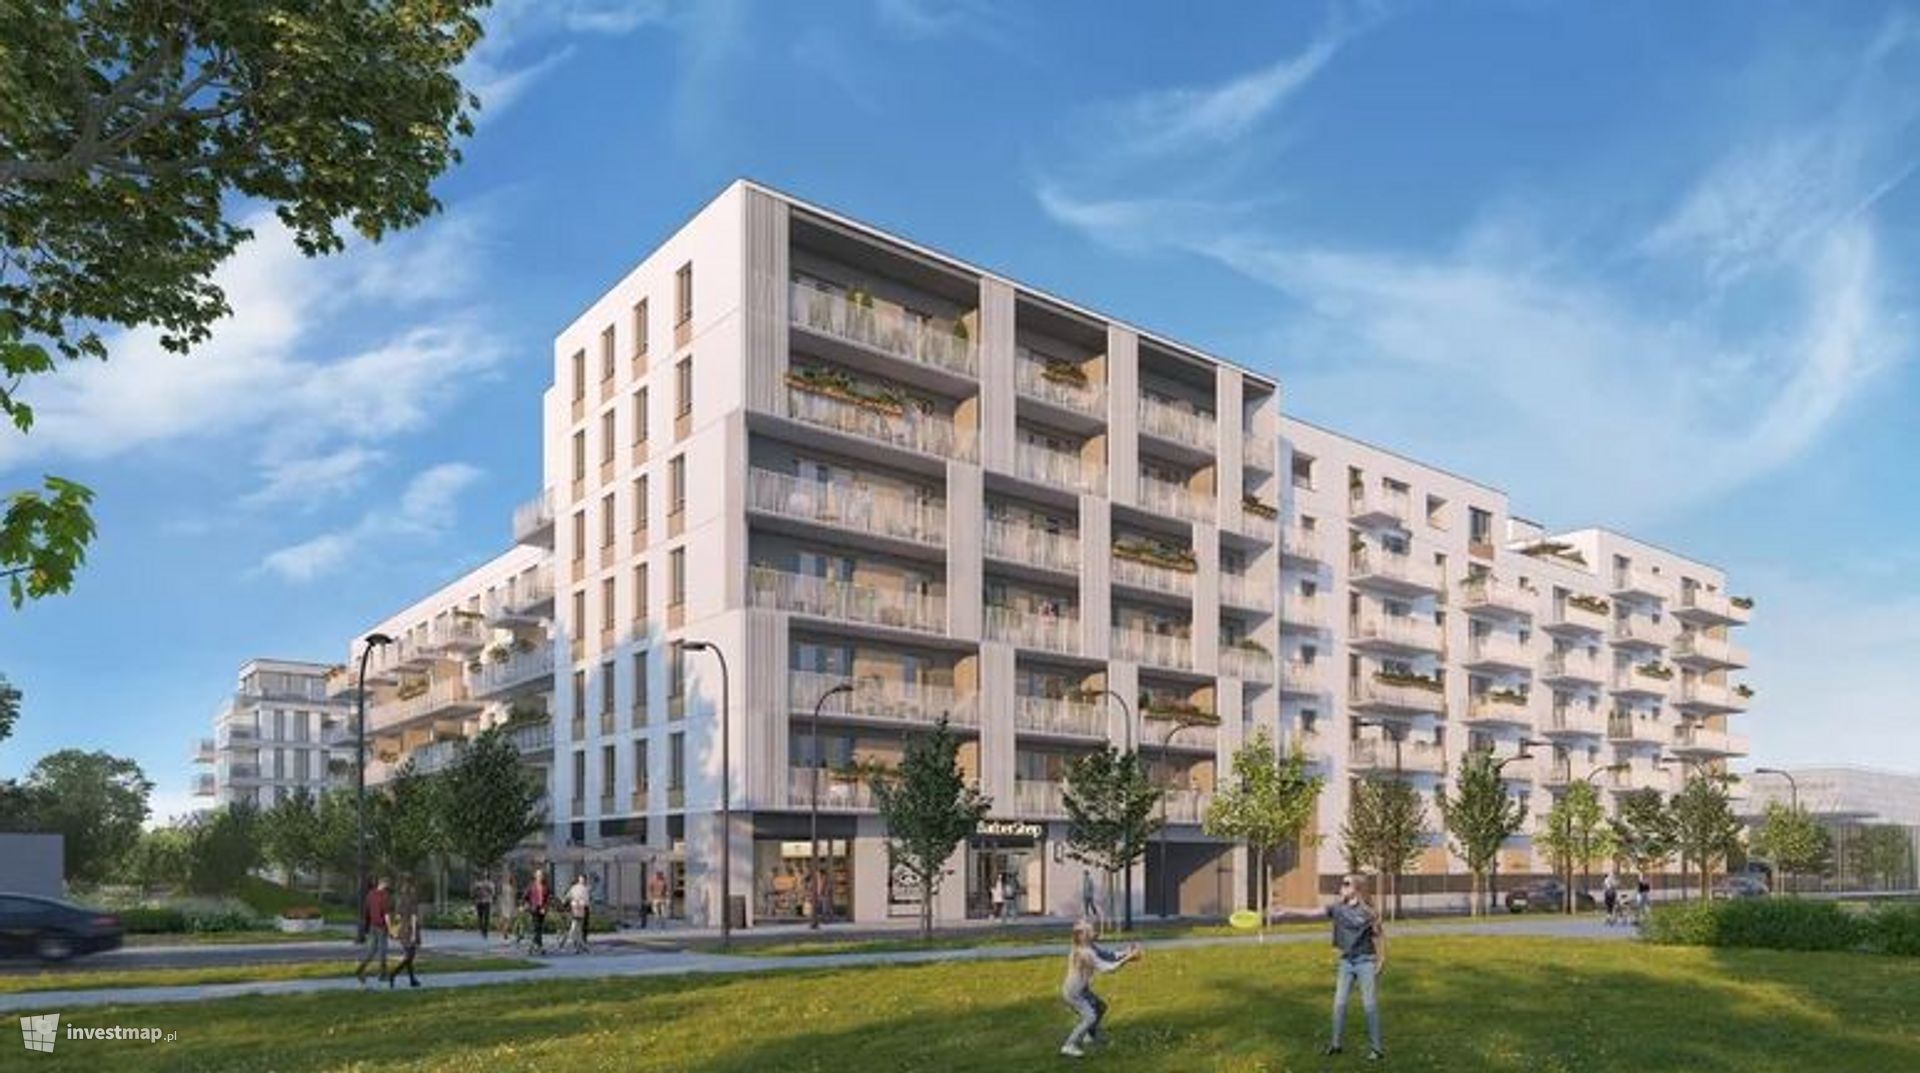 Yareal zrealizuje swoją pierwszą inwestycję mieszkaniową na warszawskim Bemowie 